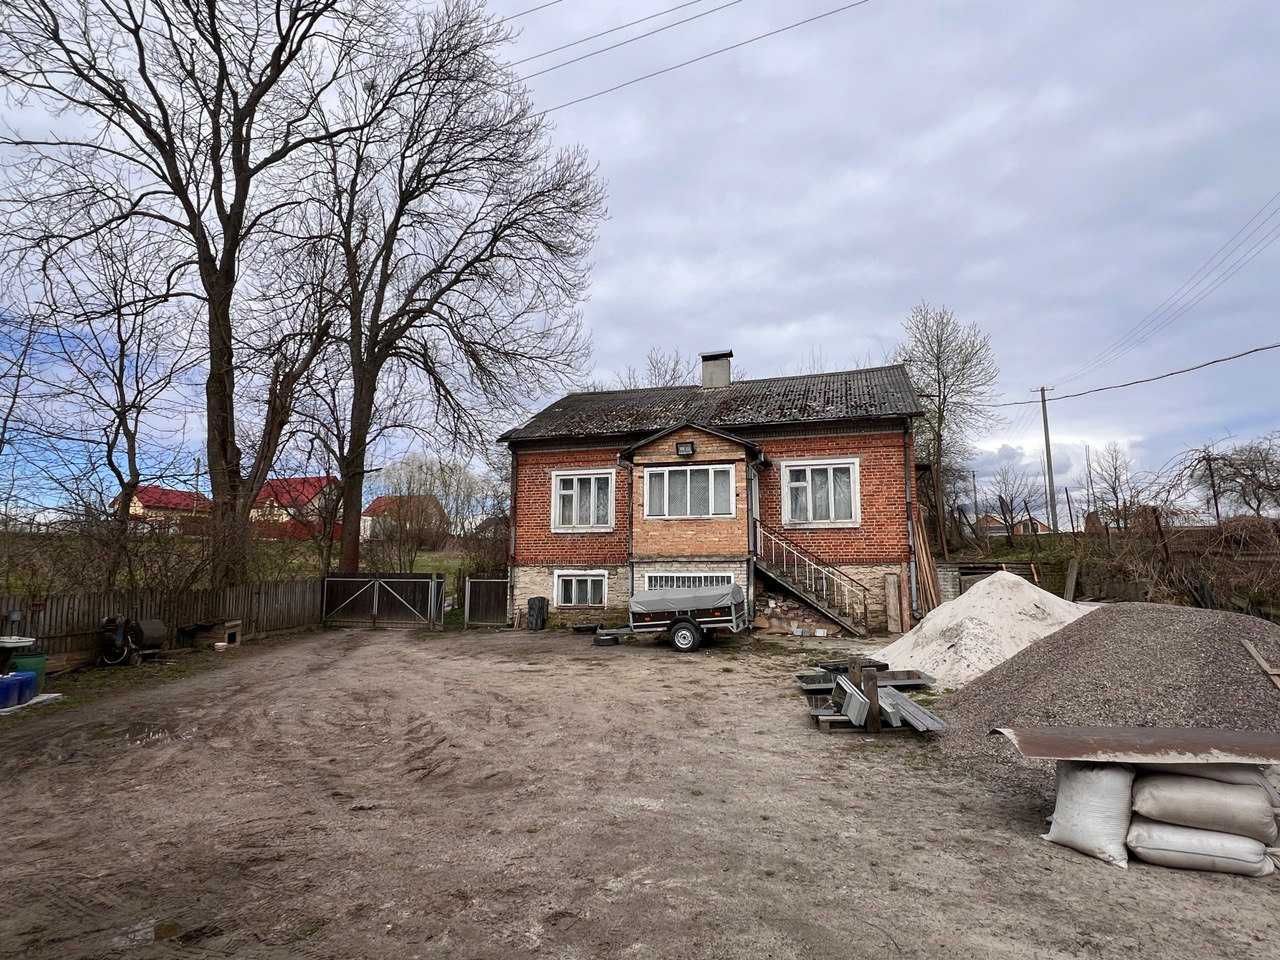 Будинок 114 м2 та  земельна ділянка 0,25 гектара смт Кожичі.